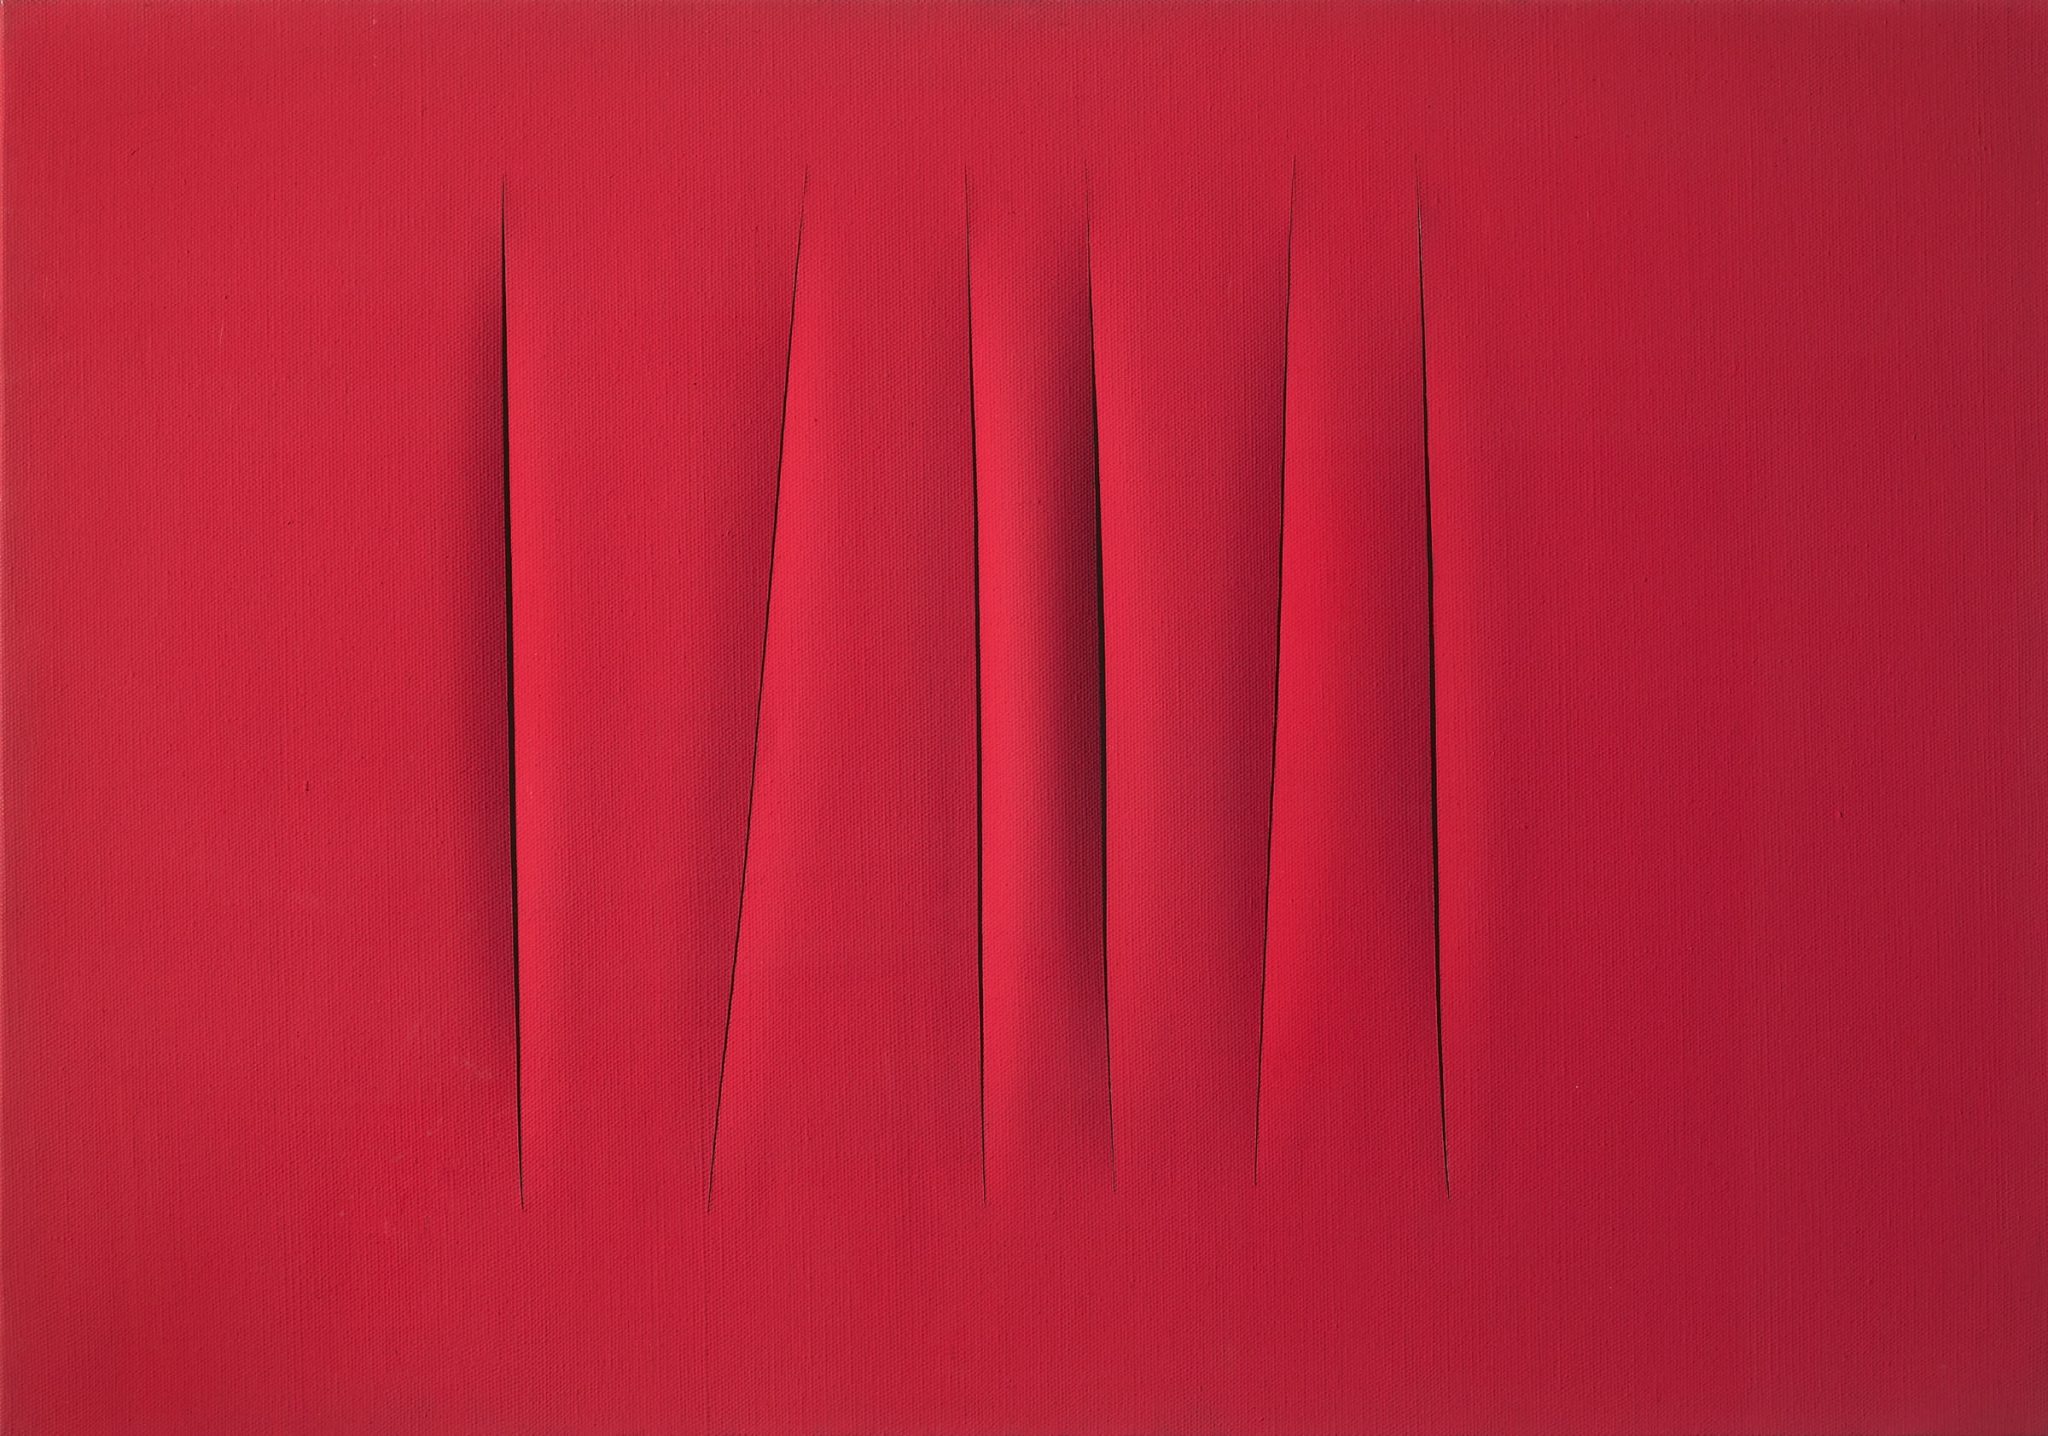 Lucio Fontana, Concetto spaziale. Attese, 1964, olio su tela, 70 x 90 cm